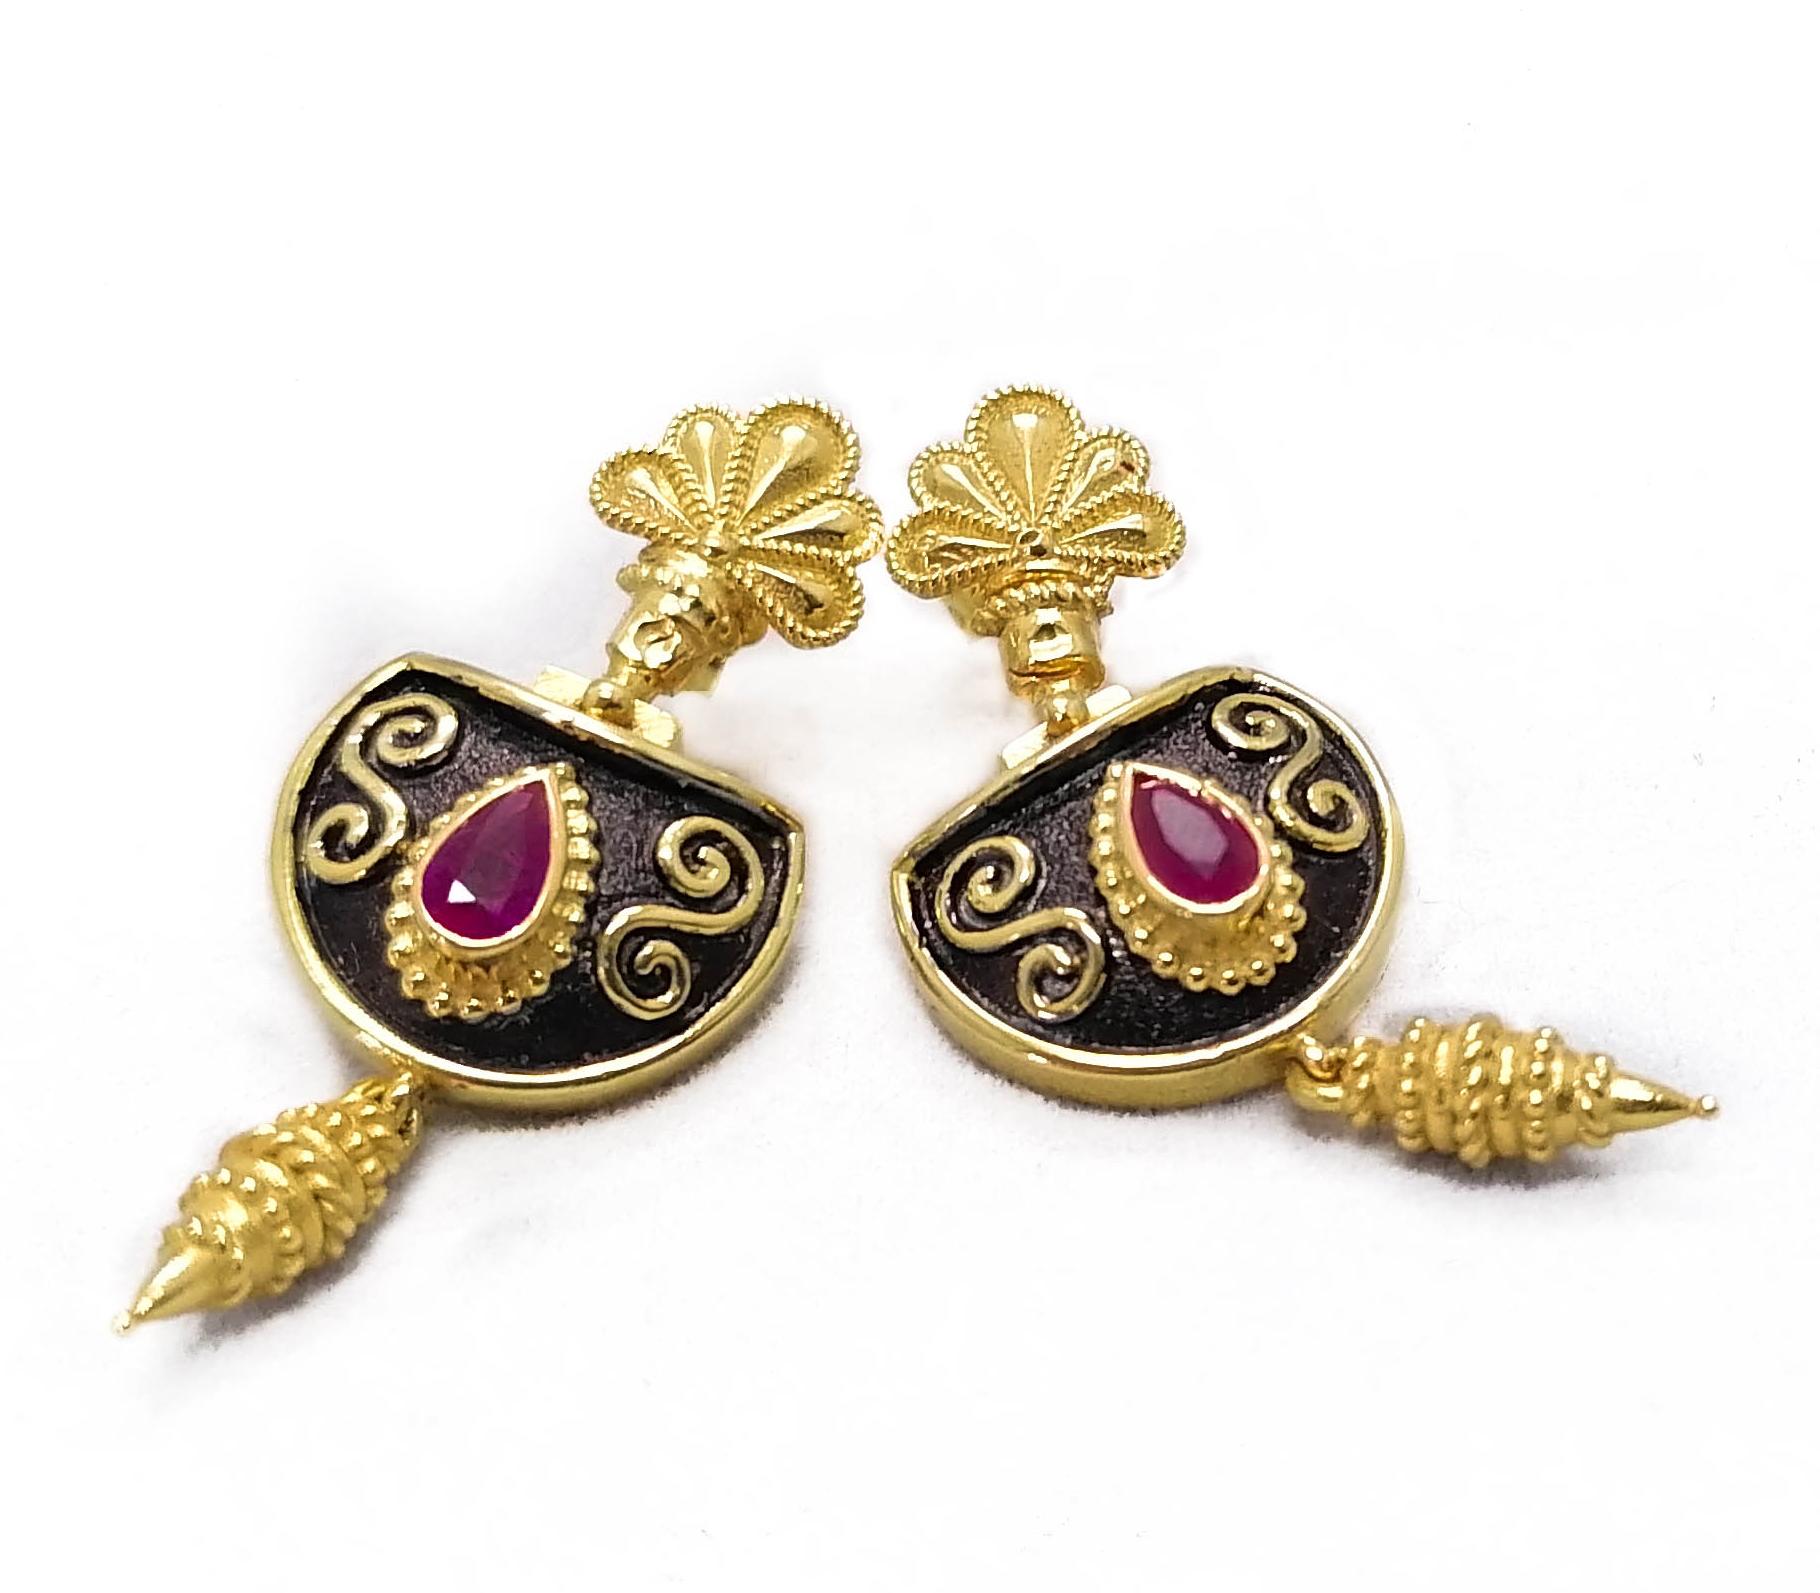 Diese S.Georgios Designer-Ohrringe sind aus 18 Karat Gelbgold handgefertigt und mit mikroskopischer Granulation im Stil der byzantinischen Ära verziert. Diese wunderschönen Tropfenohrringe sind mit 2 tropfenförmigen natürlichen Rubinen mit einem